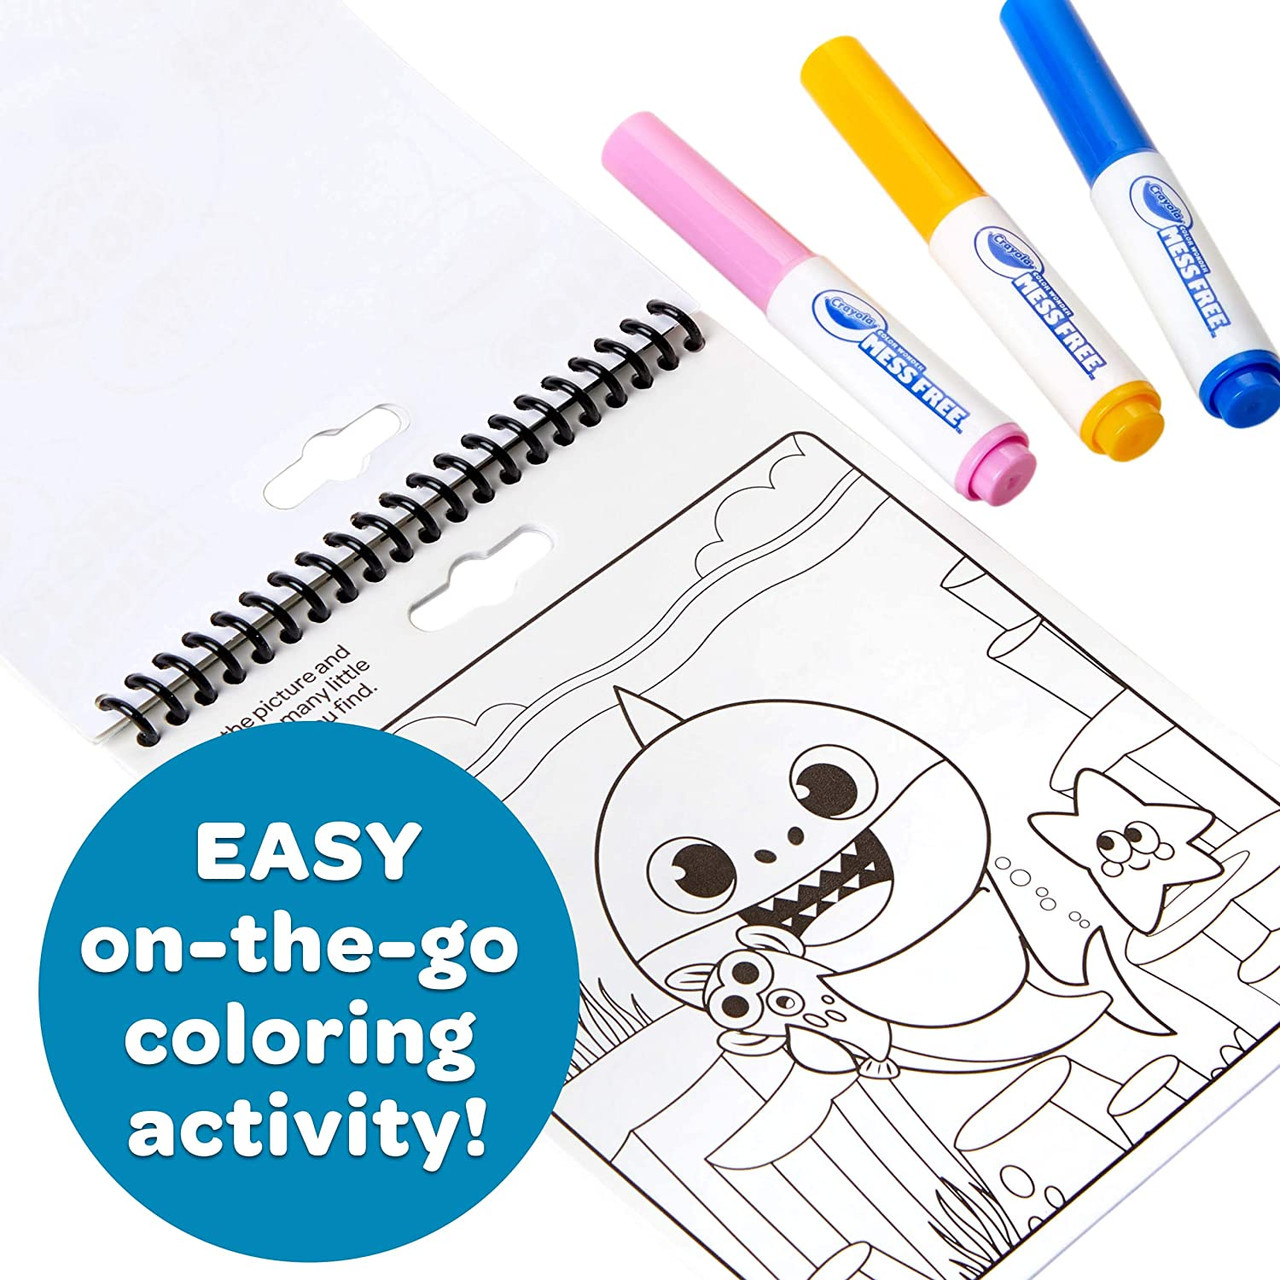 Crayola Color Wonder Coloring Pad & Markers Frozen